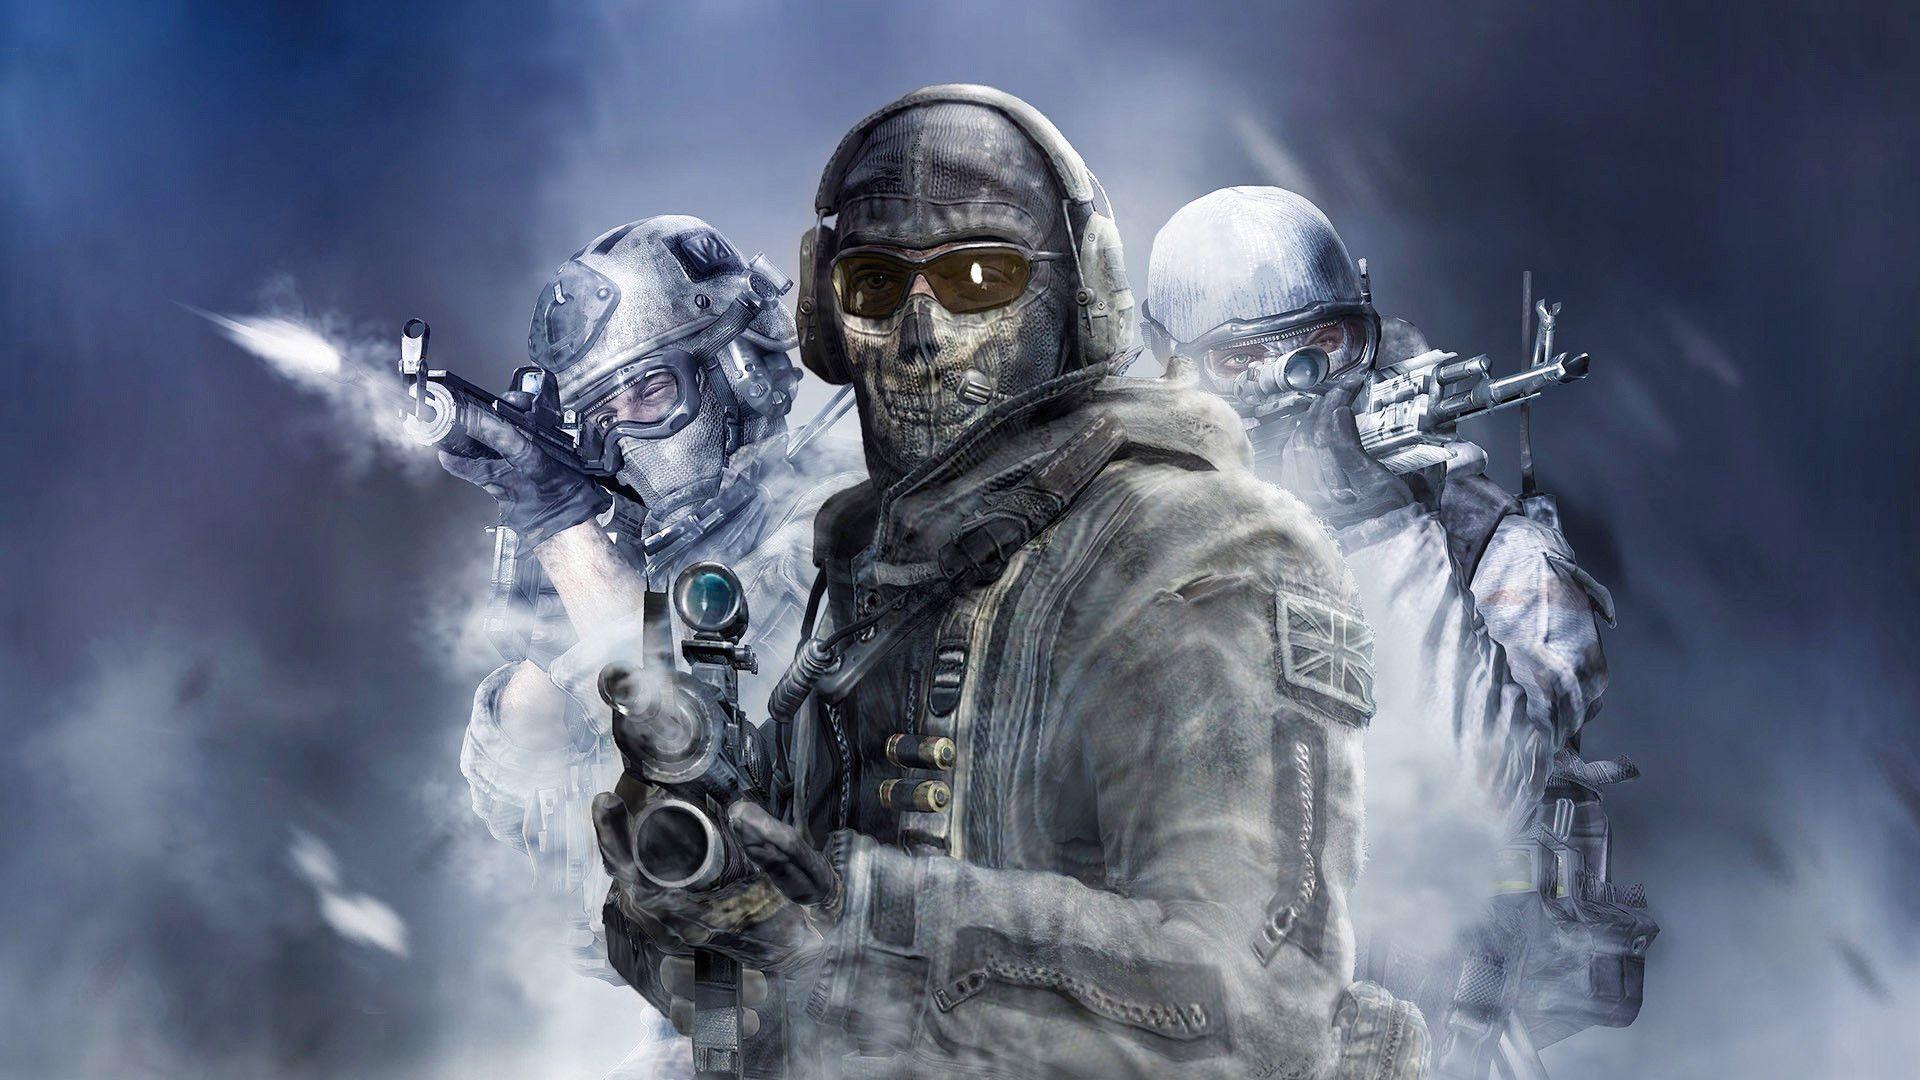 Call of Duty Wallpapers - Los mejores fondos gratuitos de Call of Duty